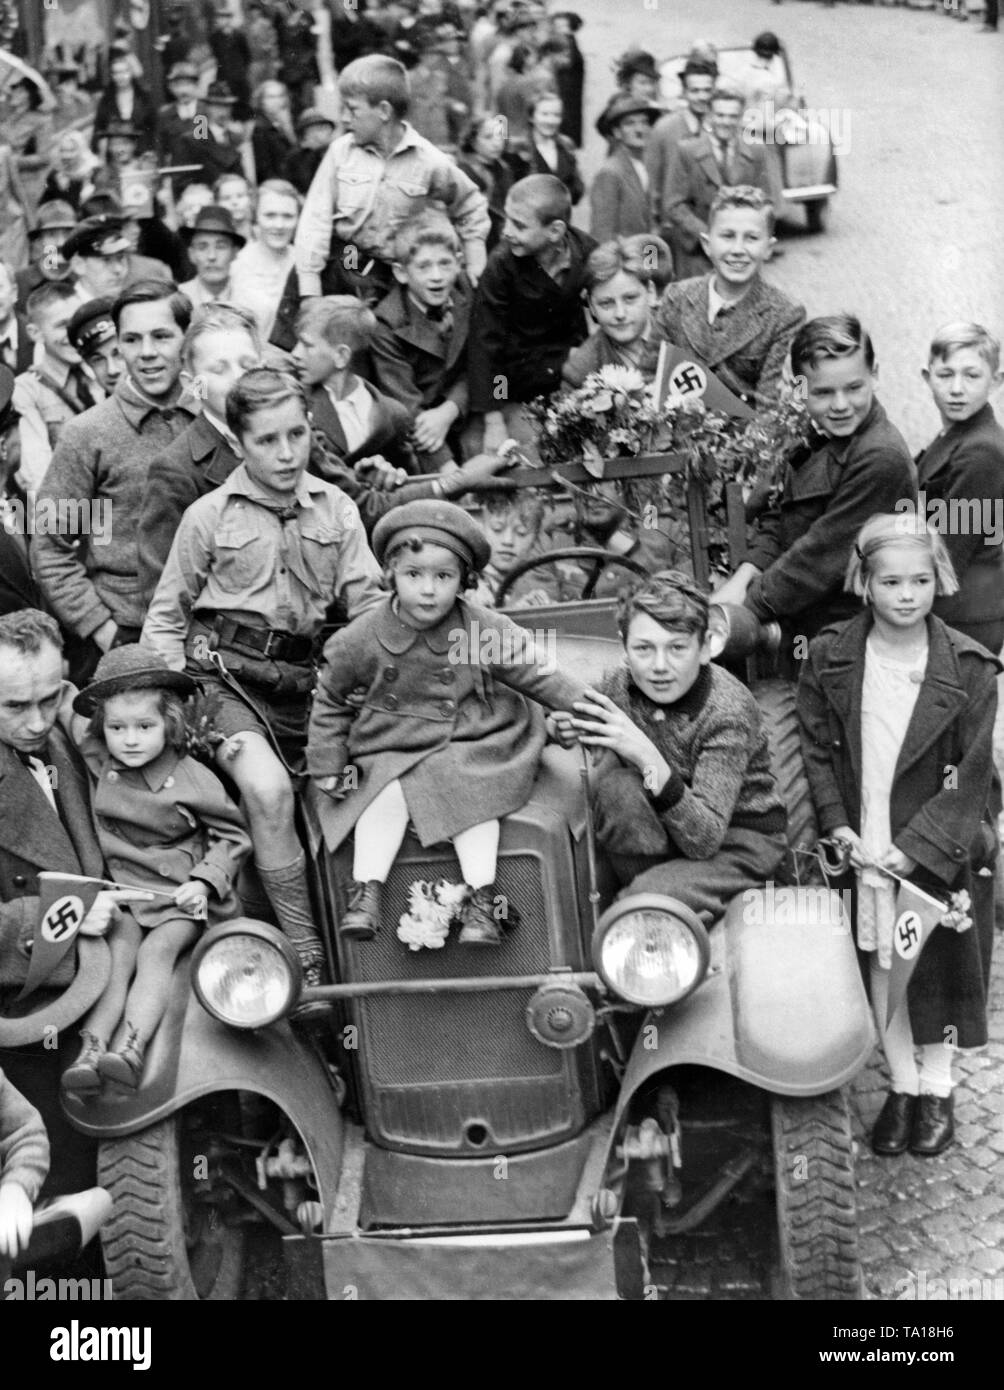 Eine Gruppe von Kindern steht oder sitzt auf einem Fahrzeug der Wehrmacht am 4. Oktober 1938, heute in Karlsbad (Karlovy Vary) während der Besetzung des Sudetenlandes durch deutsche Truppen. Stockfoto